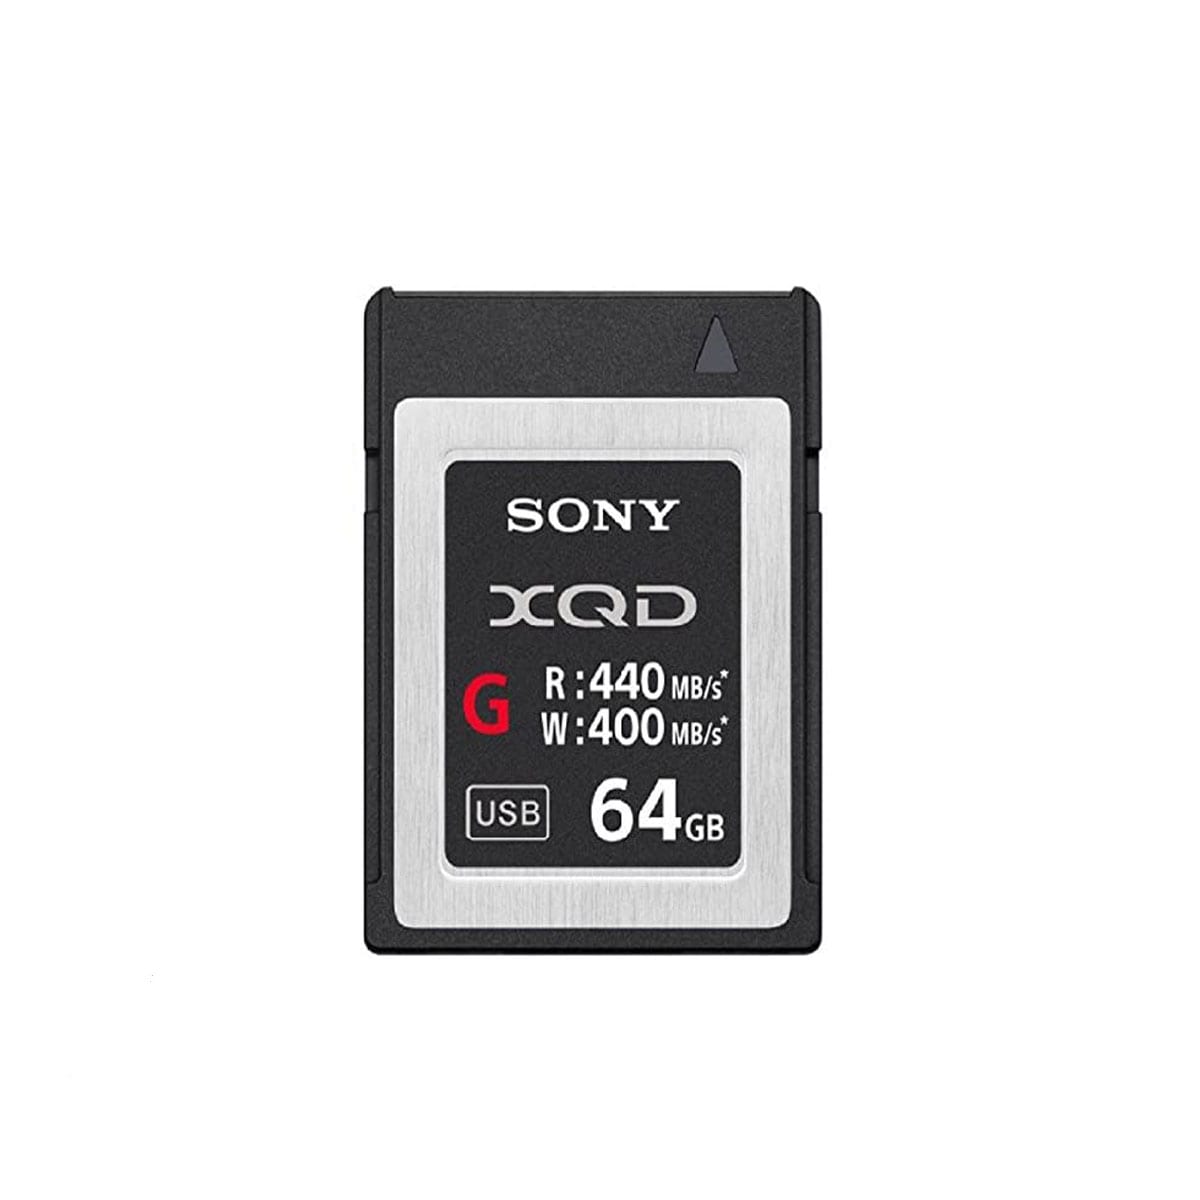 Sony XQD Card, 64GB, 440MB/s